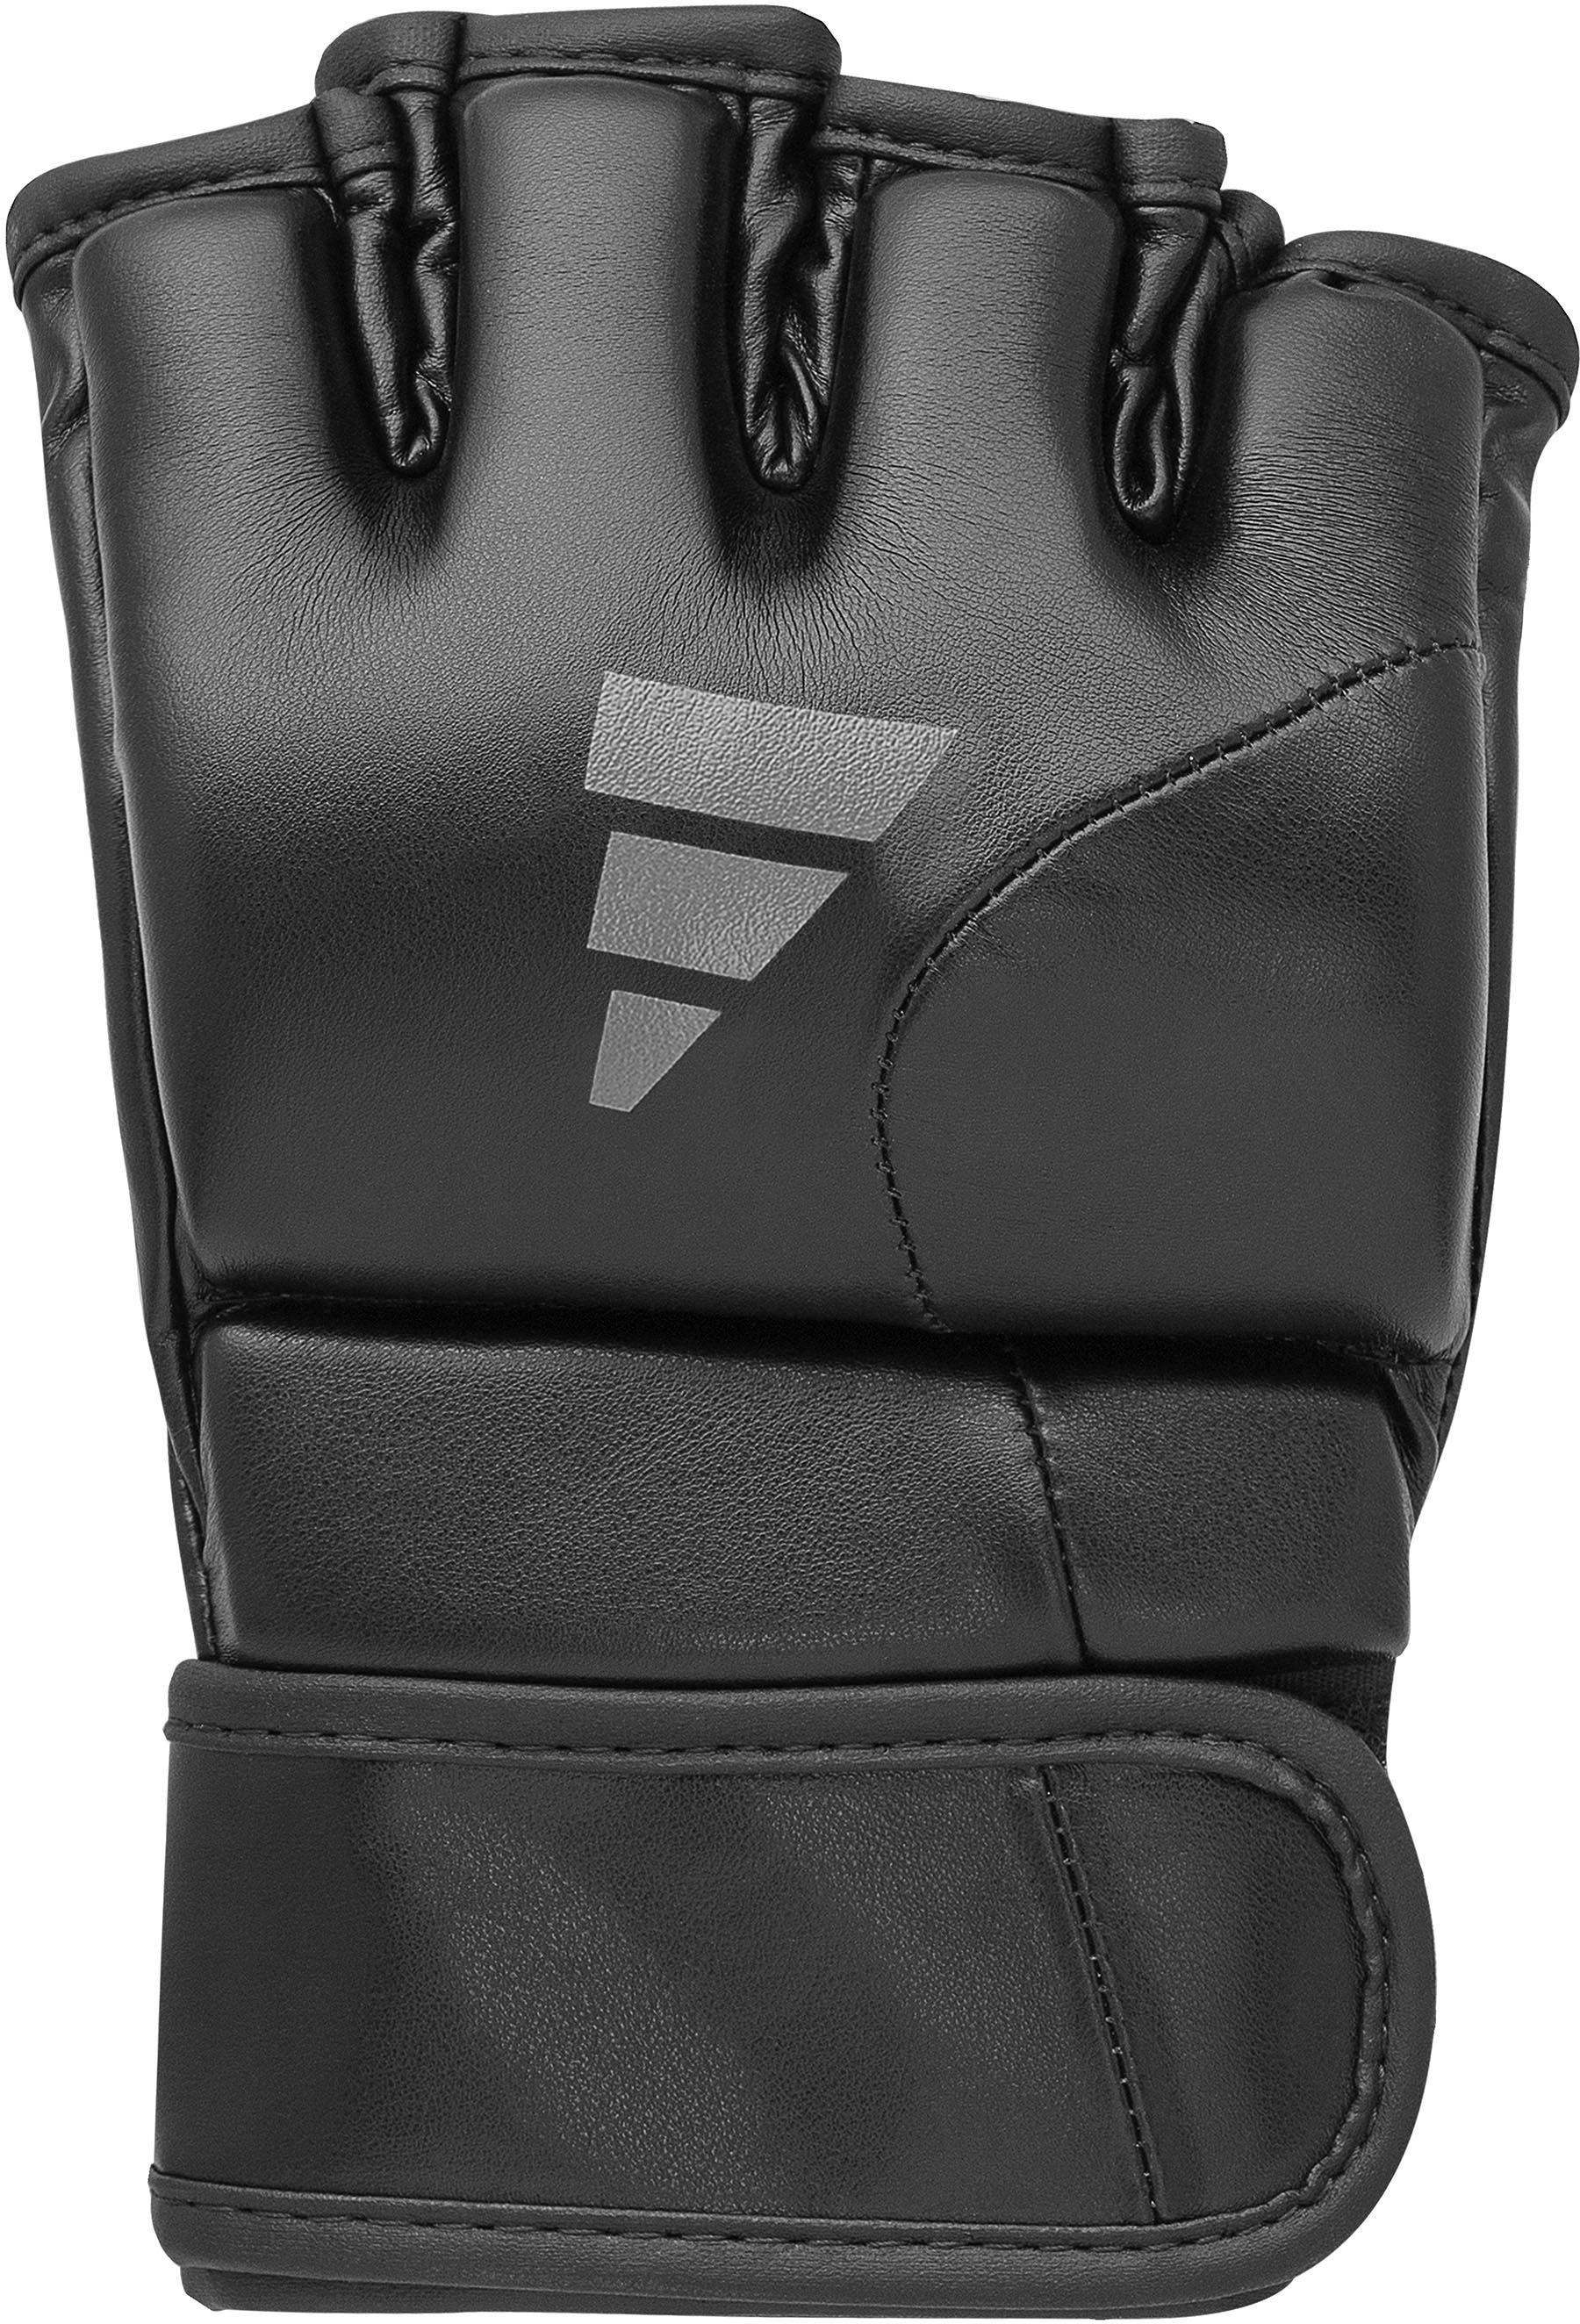 »Speed adidas bei Performance MMA-Handschuhe G150« Tilt